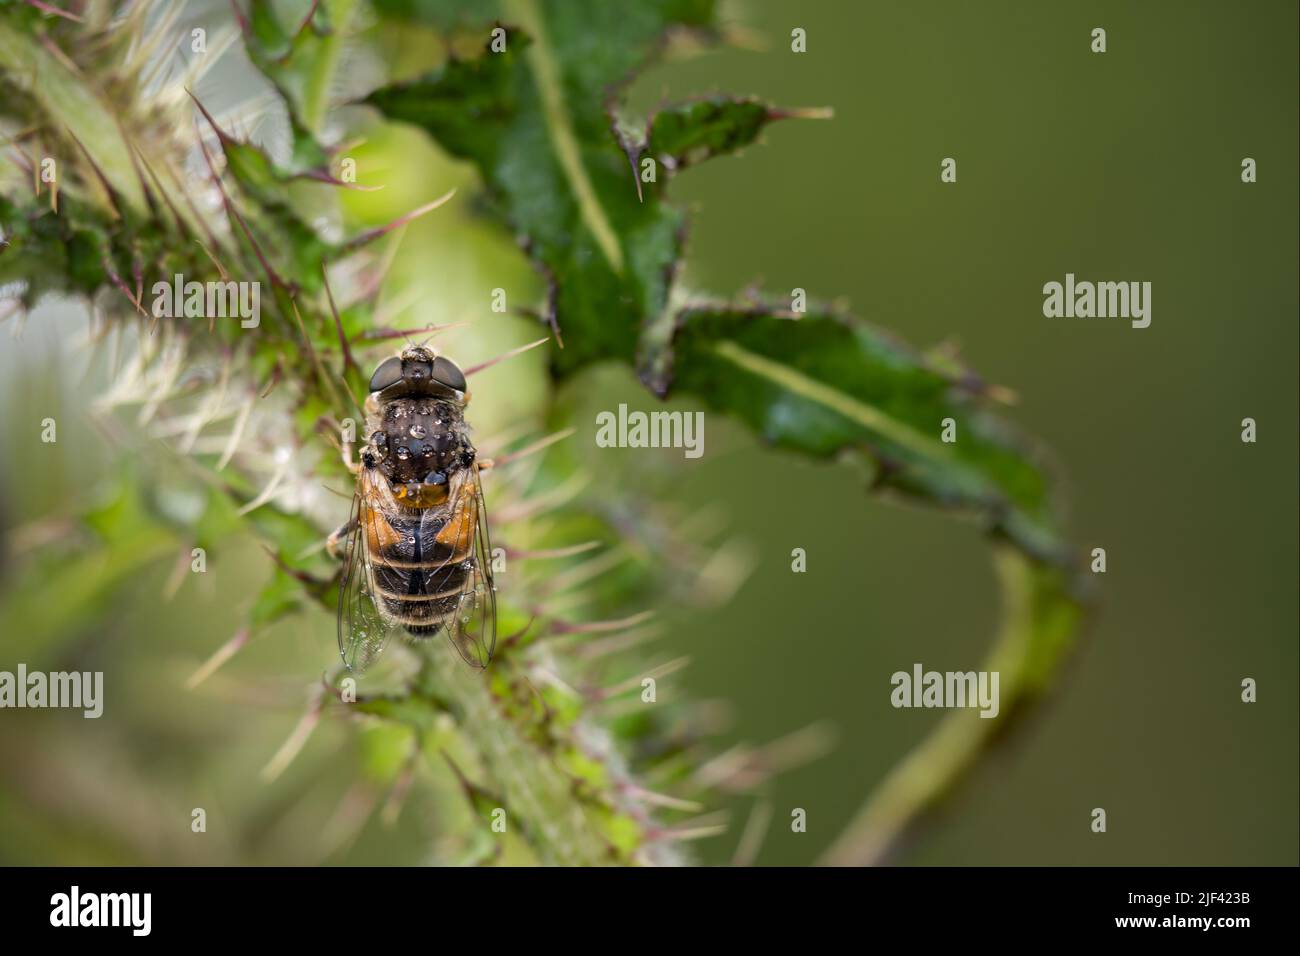 Primo piano di una mosca comune del drone, Eristalis tenax, sulla pianta del cardo dopo la pioggia. Foto Stock